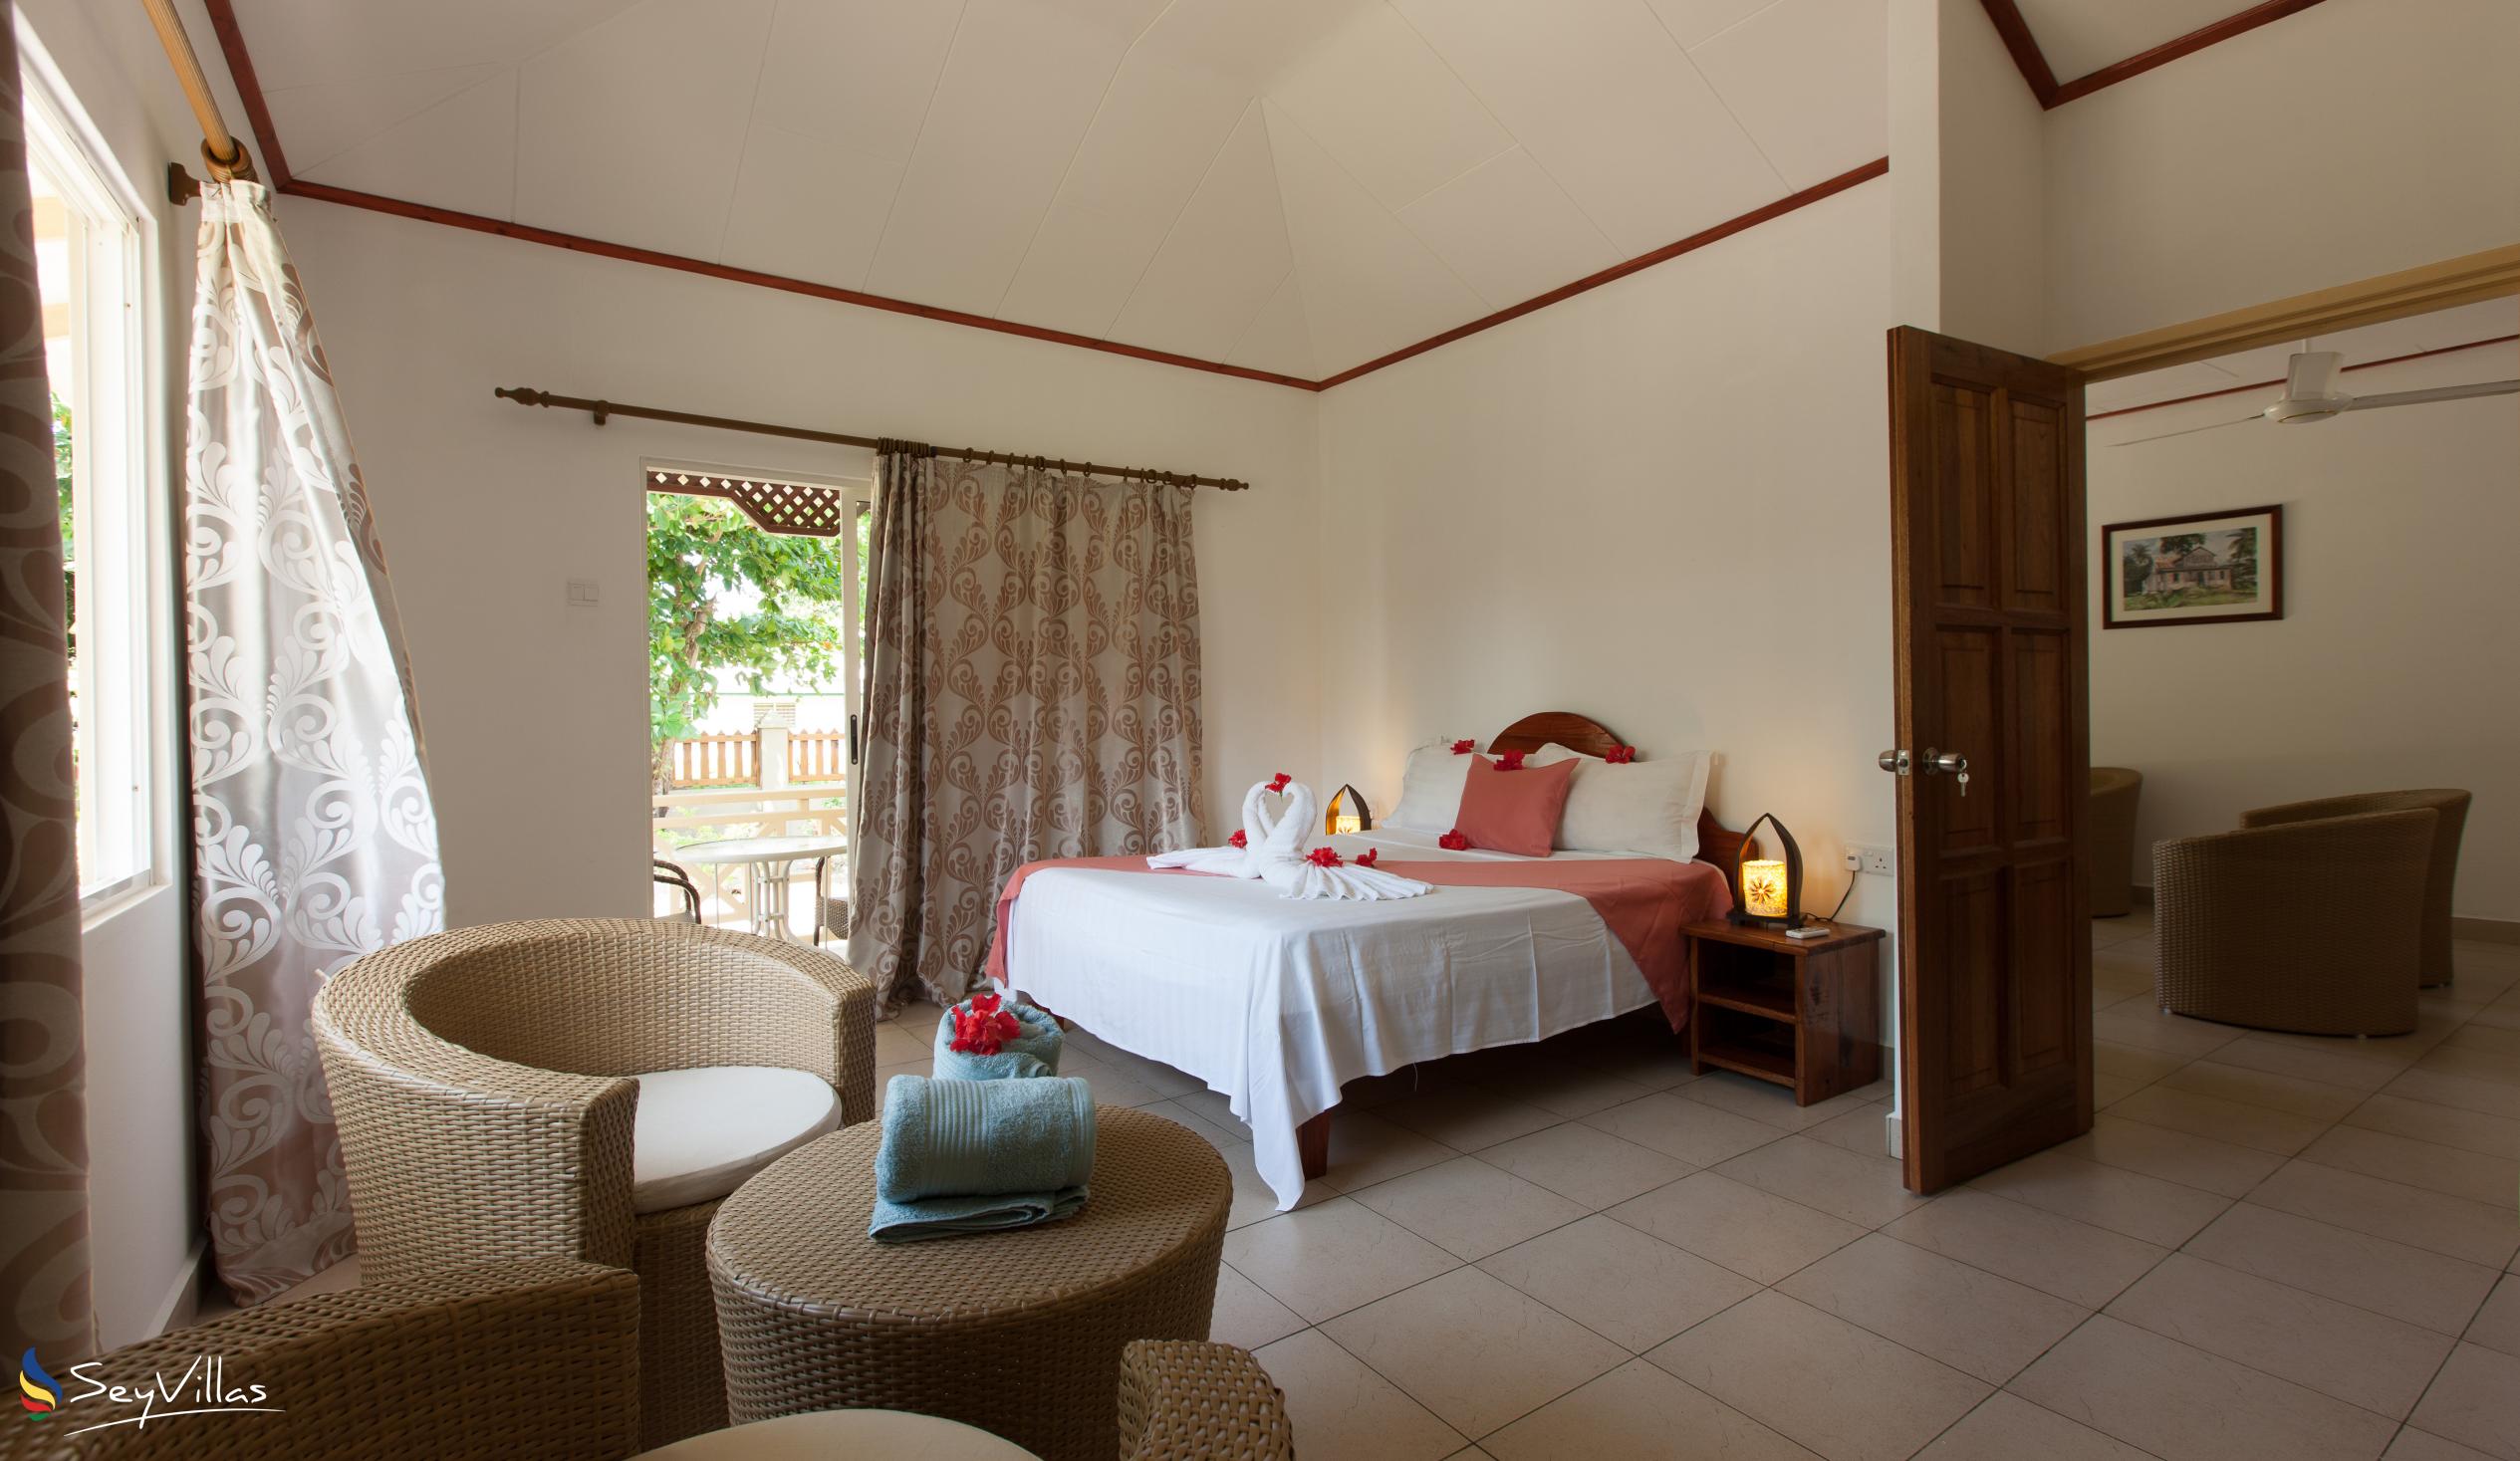 Foto 15: Hostellerie La Digue - Chalet mit 3 Schlafzimmern - La Digue (Seychellen)